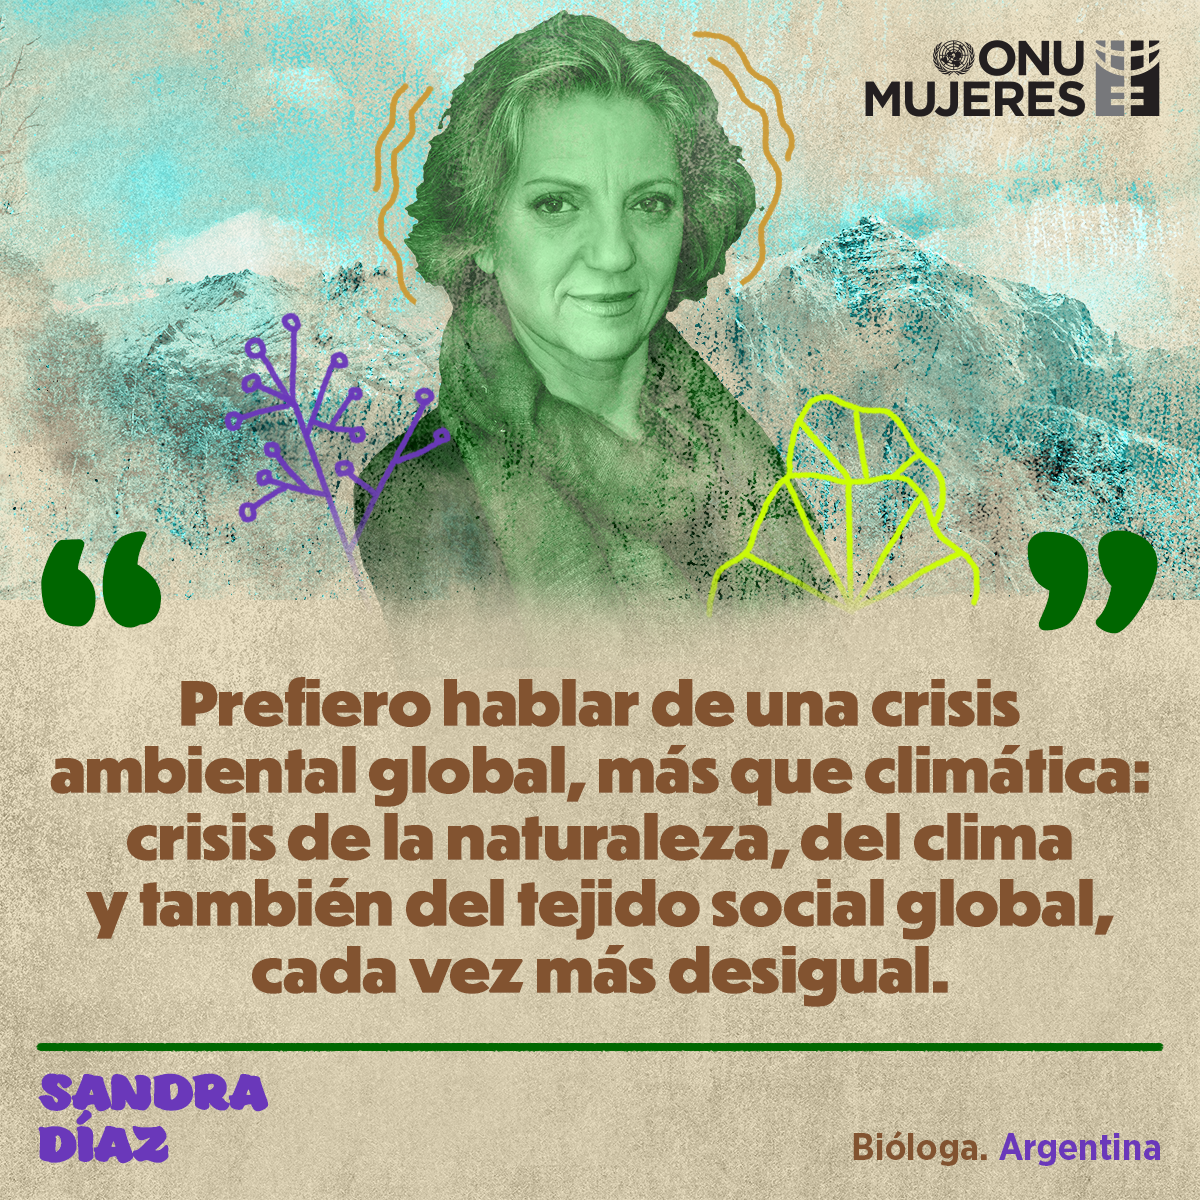 ES-Quote-Argentina-SandraDiaz-8M-UNW